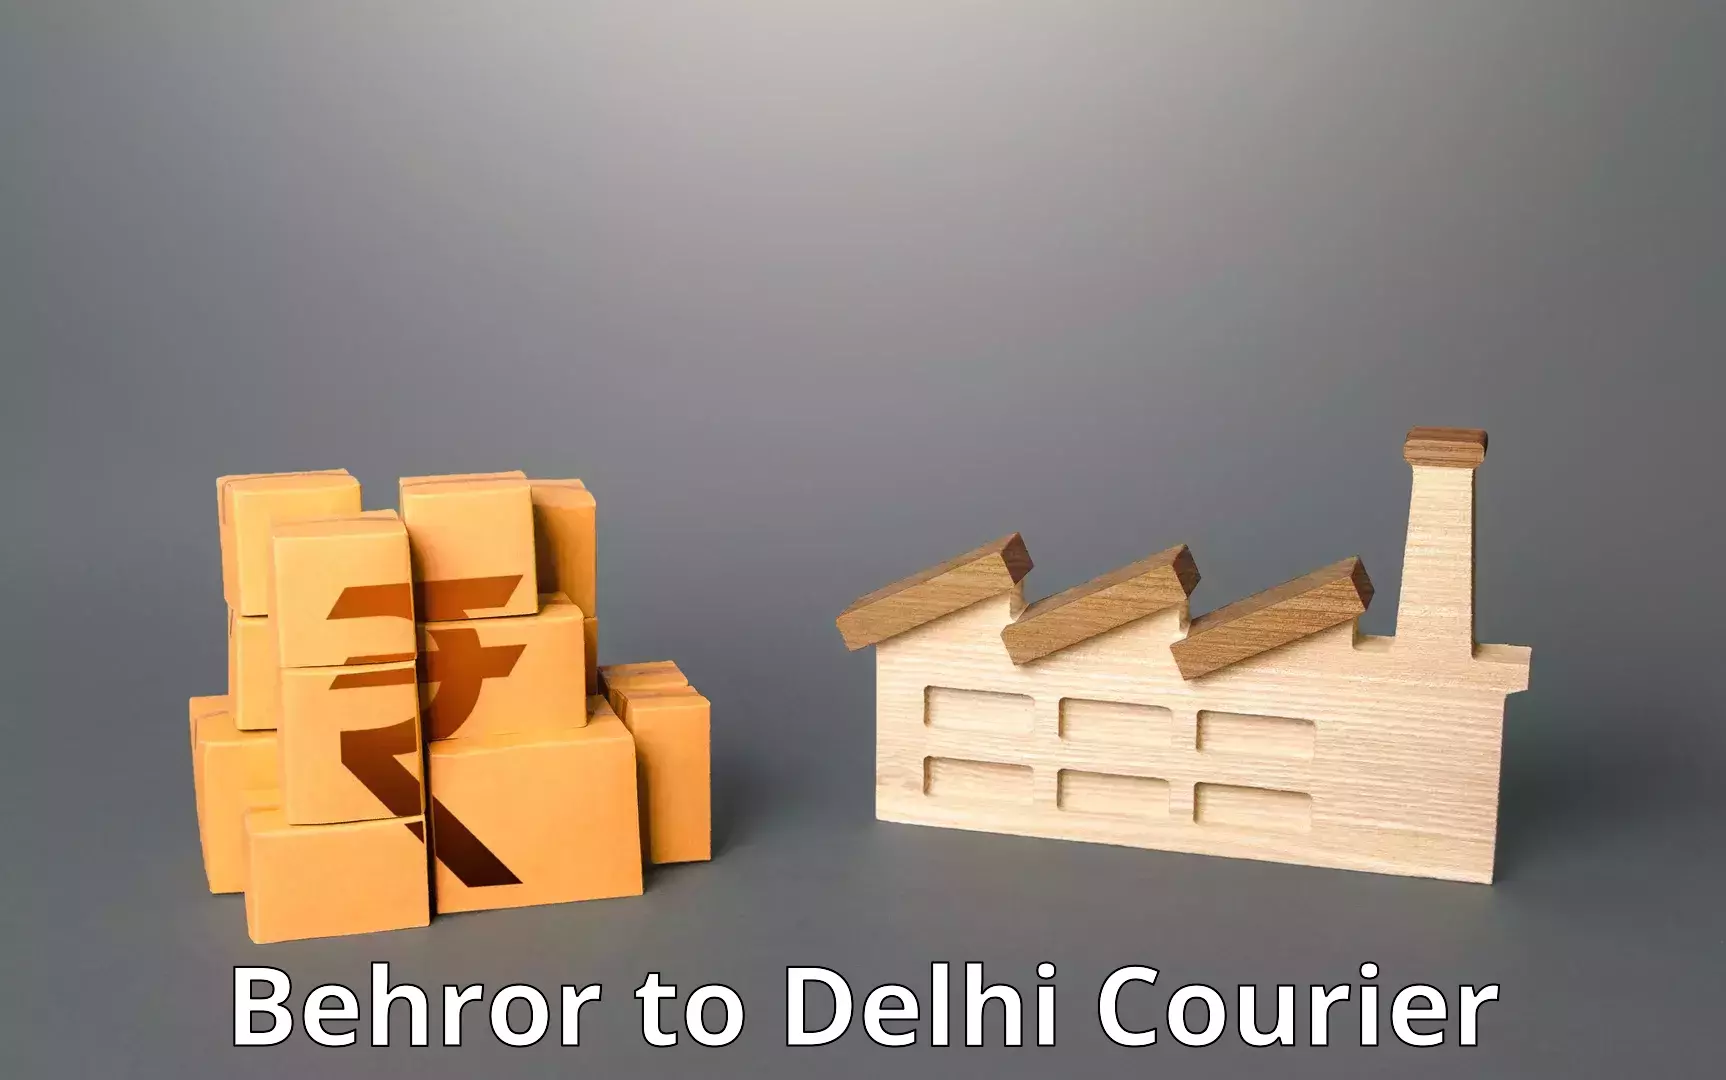 Online shipping calculator Behror to IIT Delhi